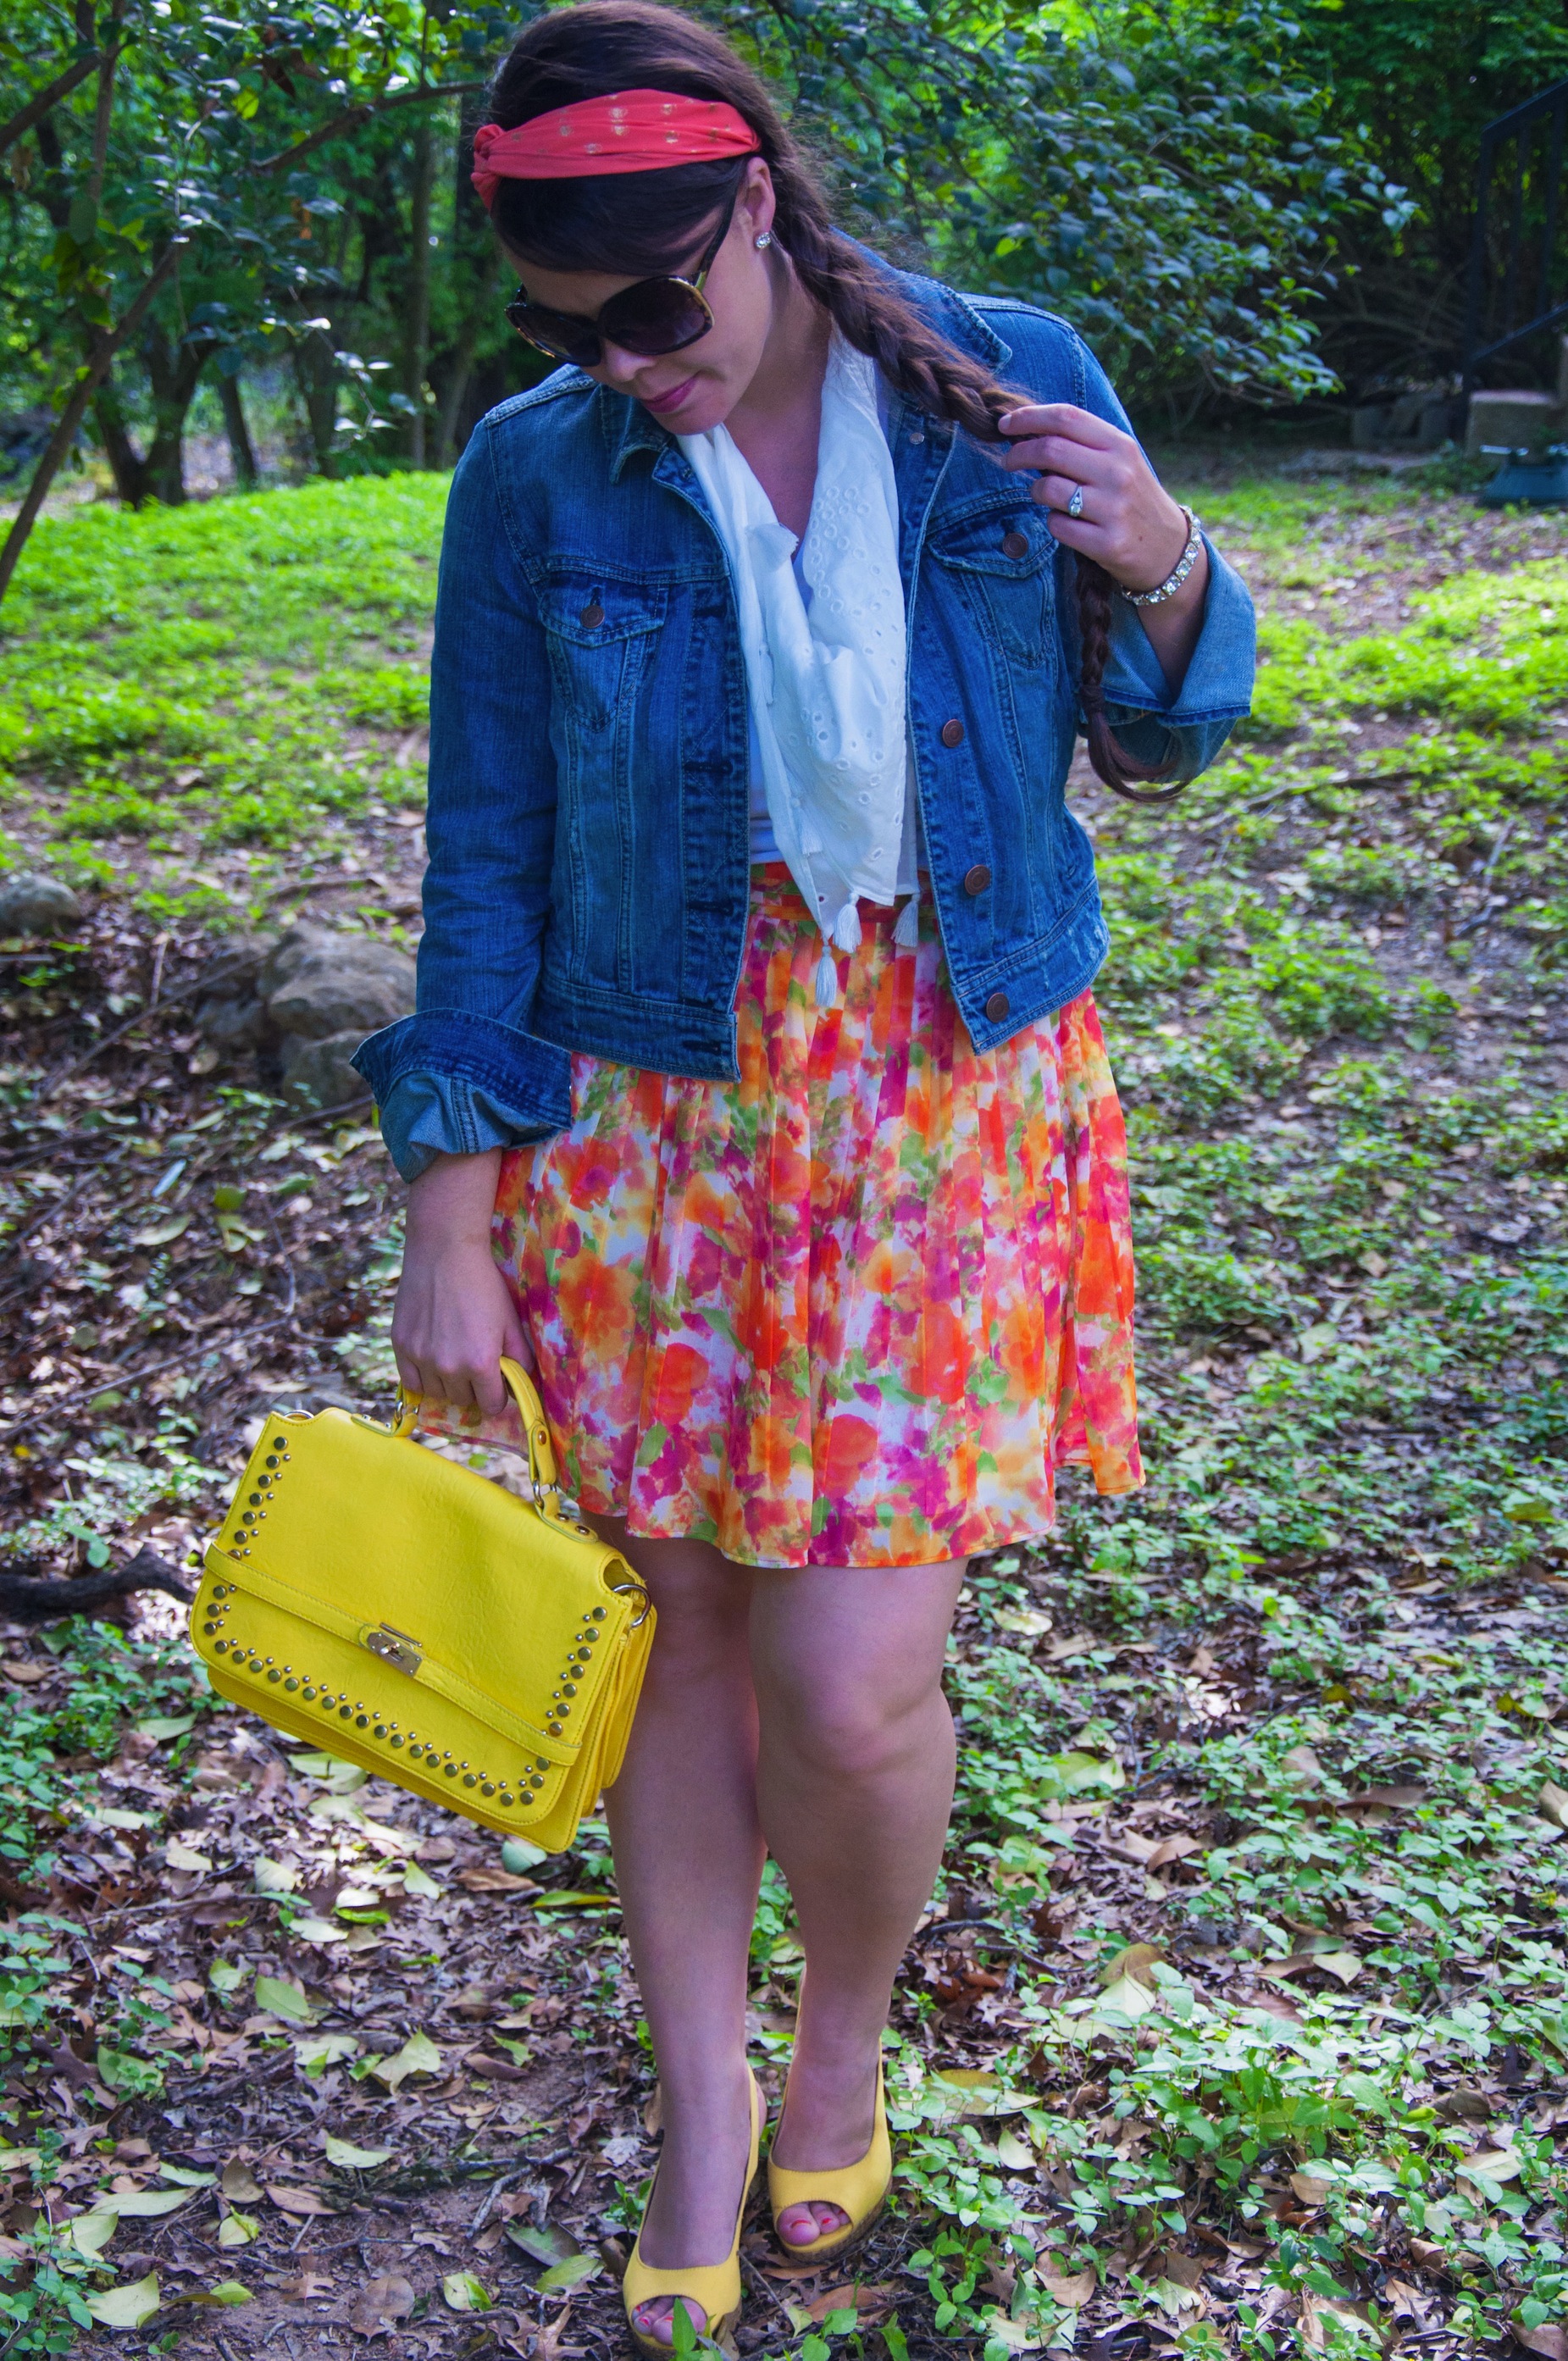 Floral skirt with denim jacket 